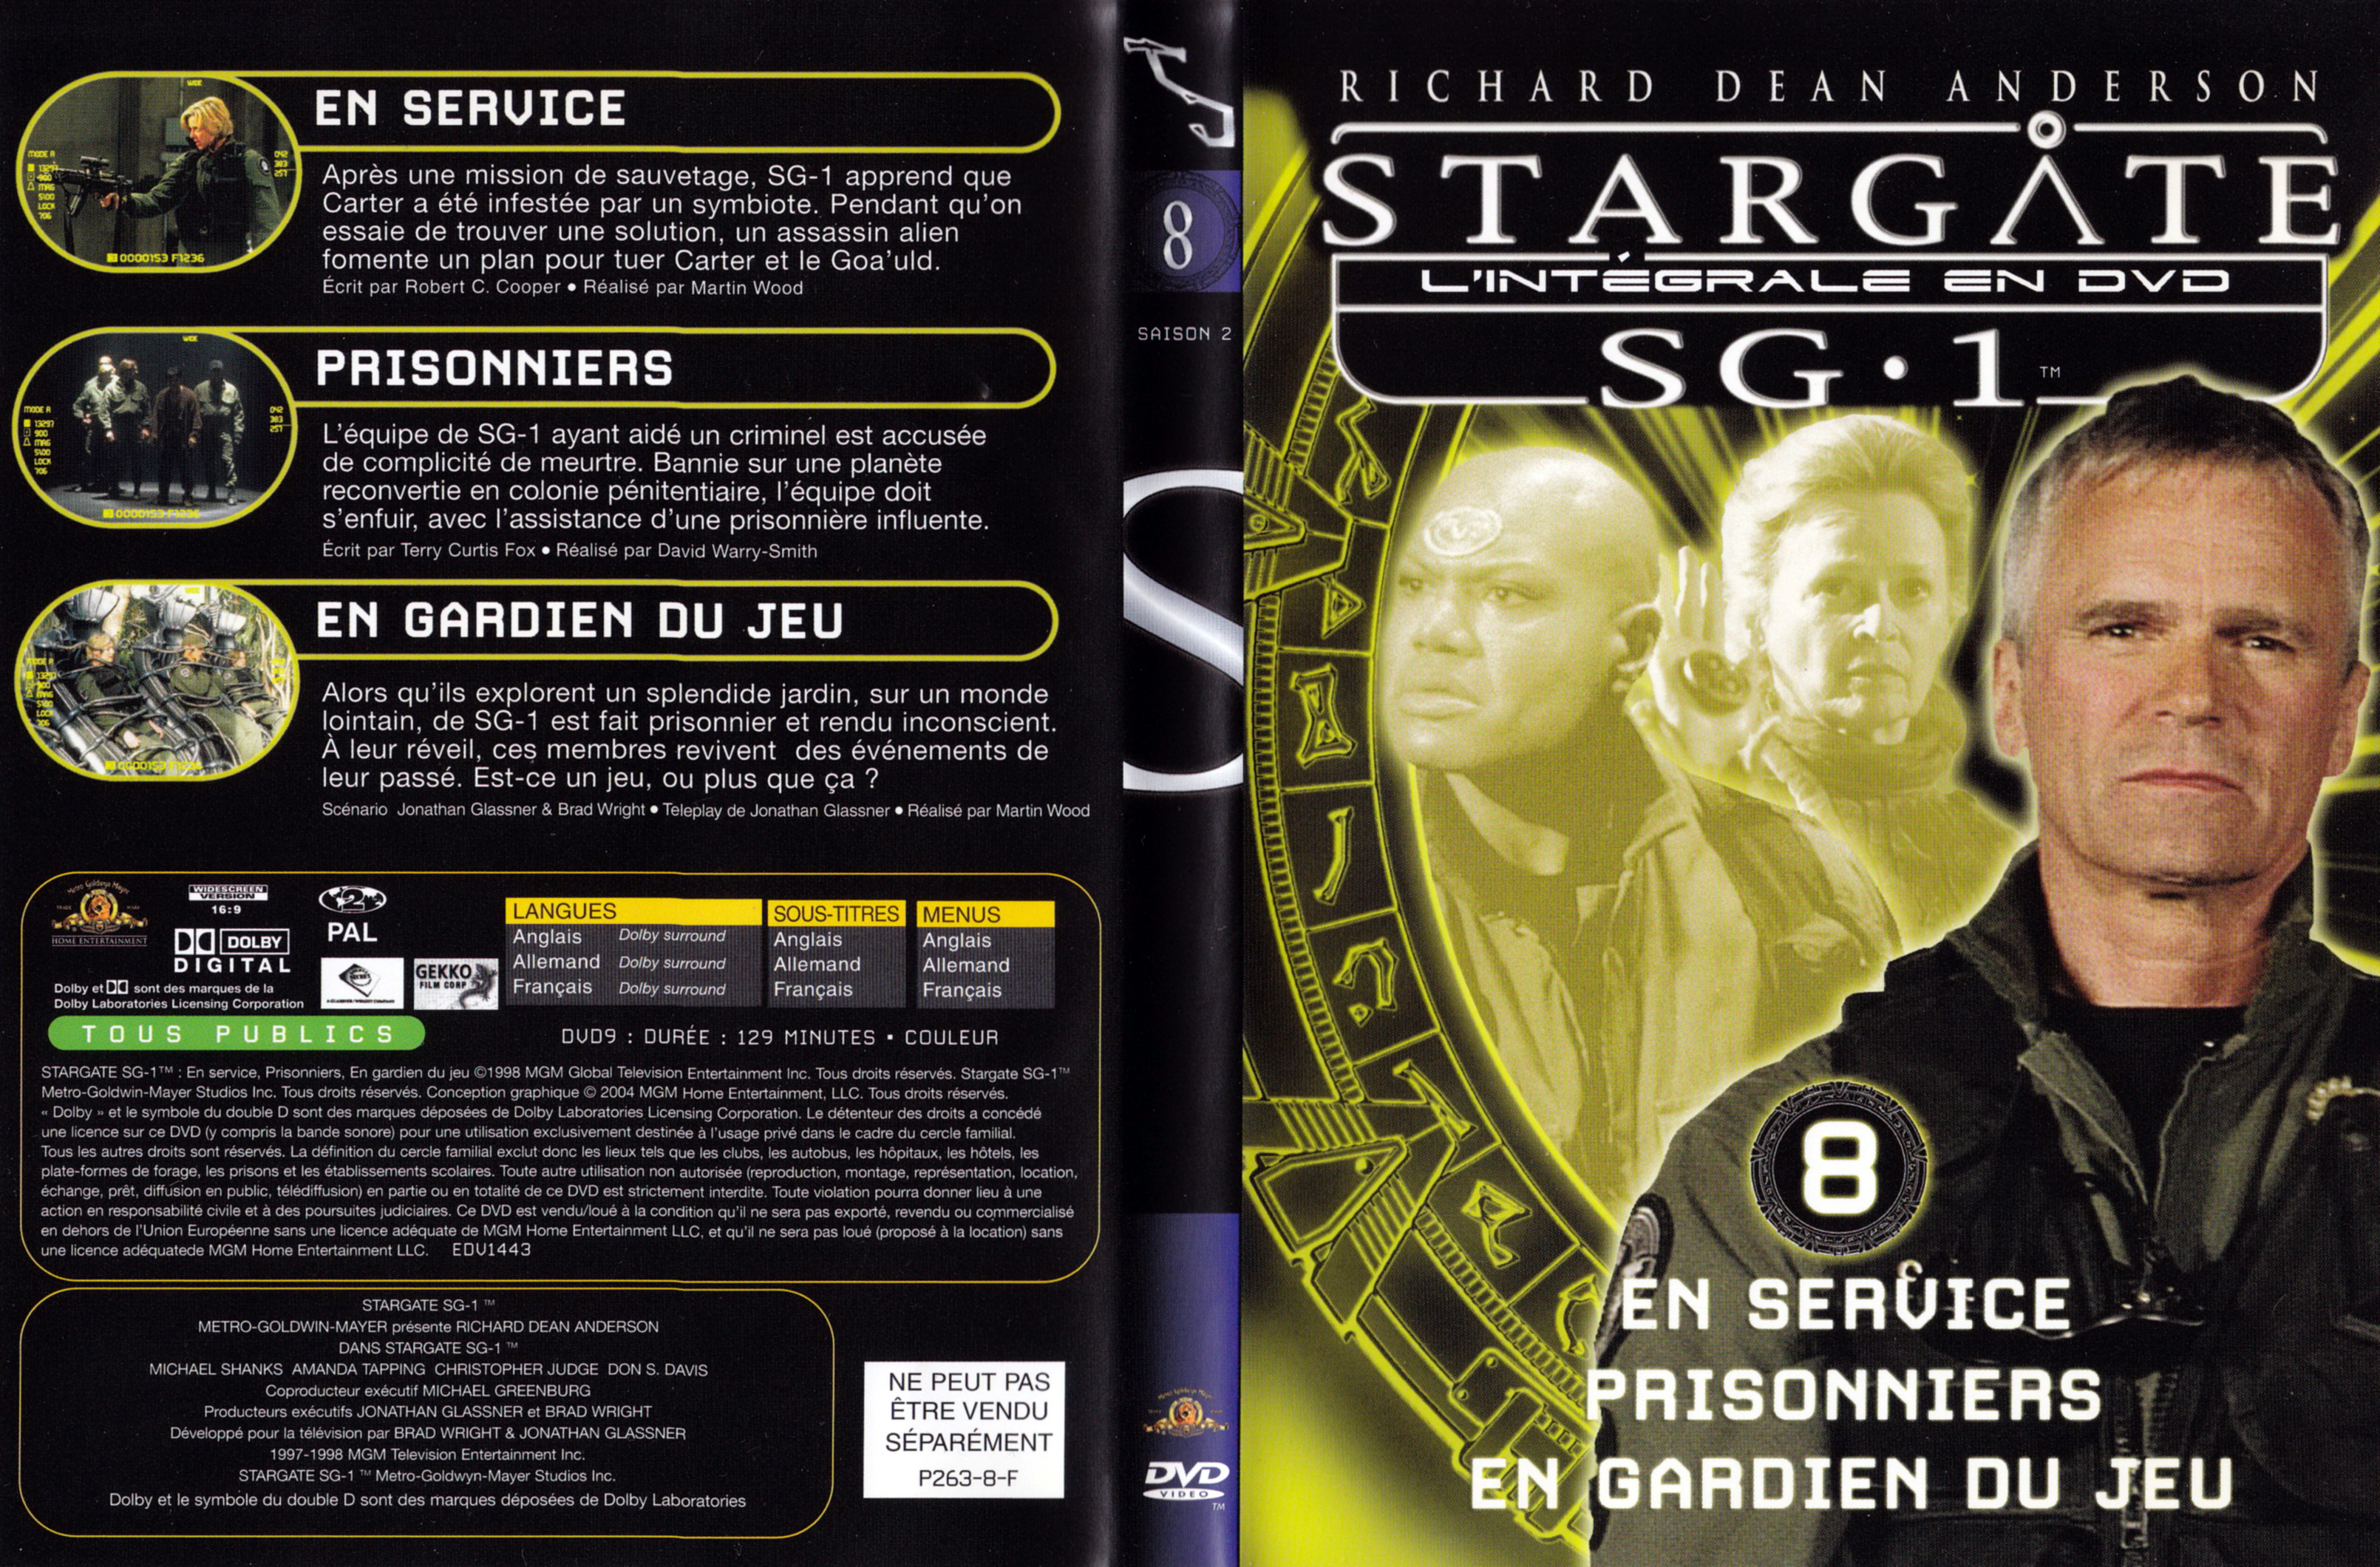 Jaquette DVD Stargate SG1 Intgrale Saison 2 vol 08